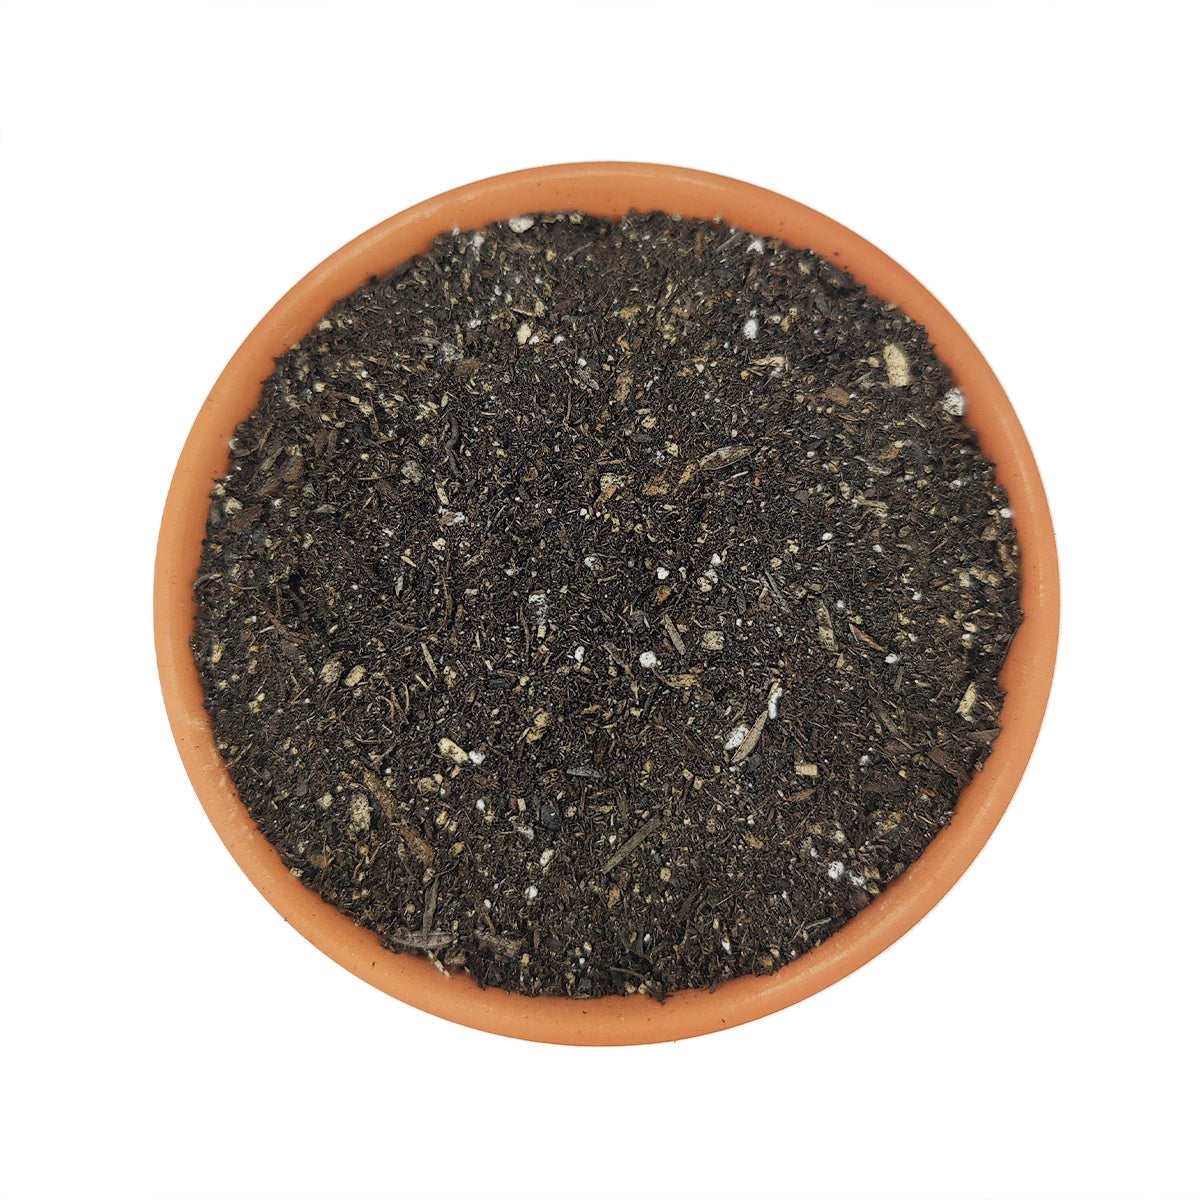 buy houseplant potting soil online, best houseplant soil, best potting soil for indoor plants